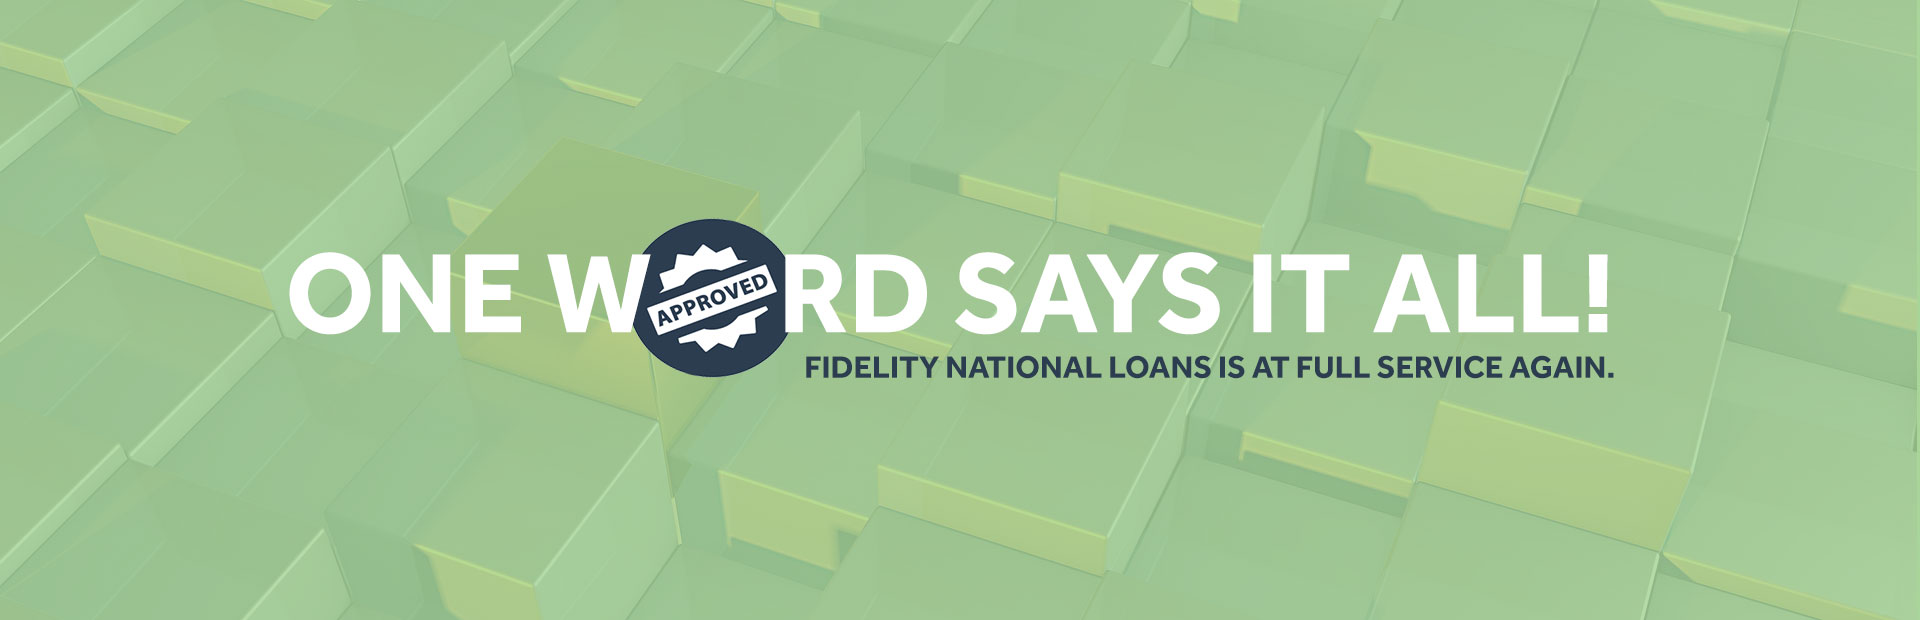 Fidelity National Loans